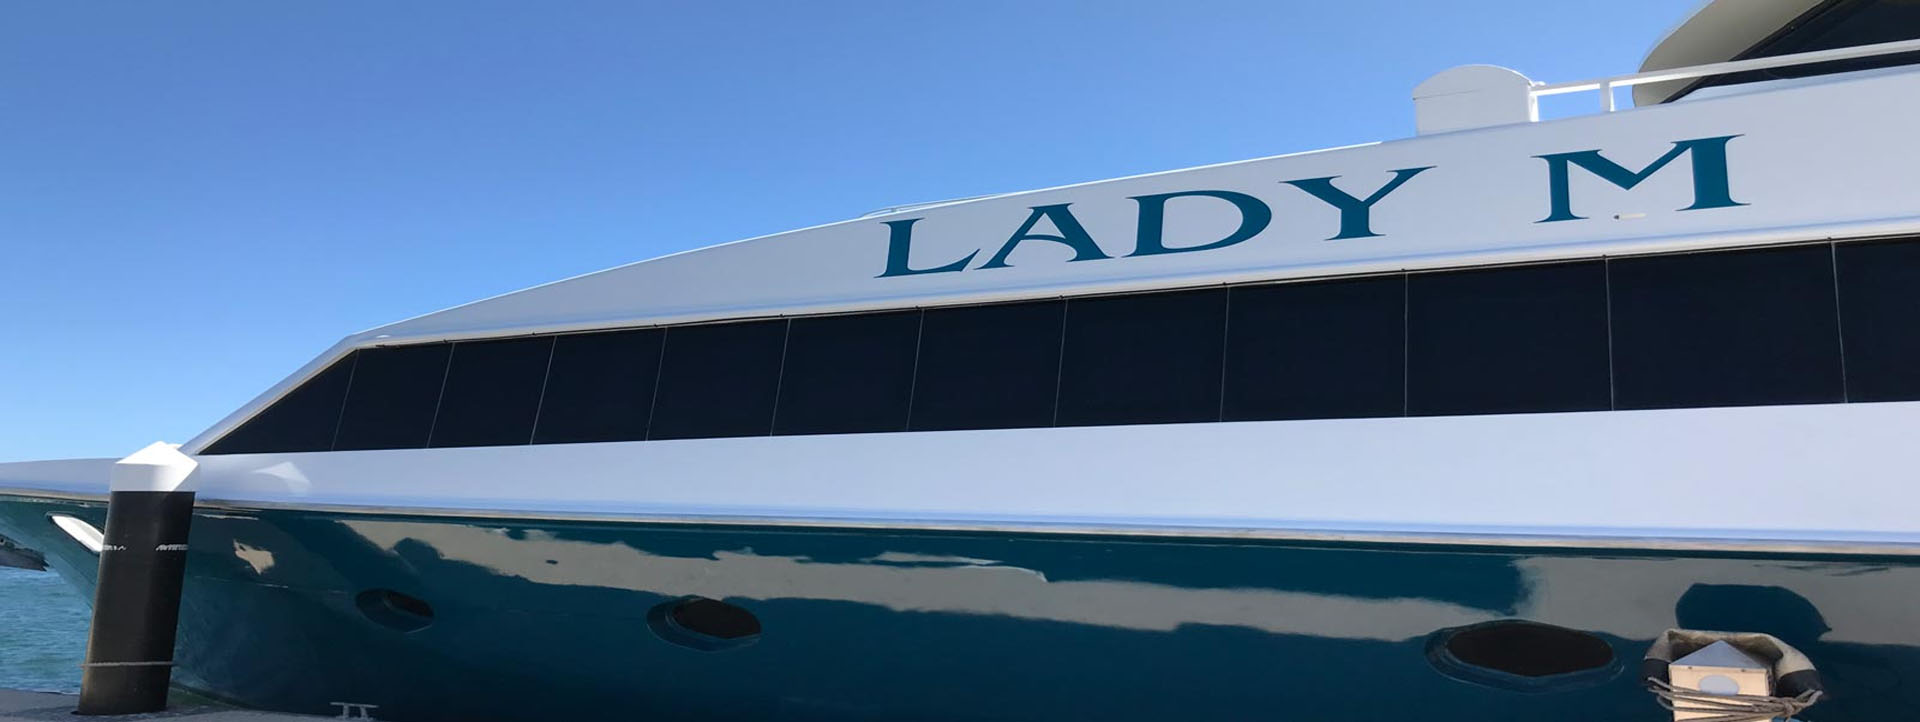 LADY M side logo of vessel